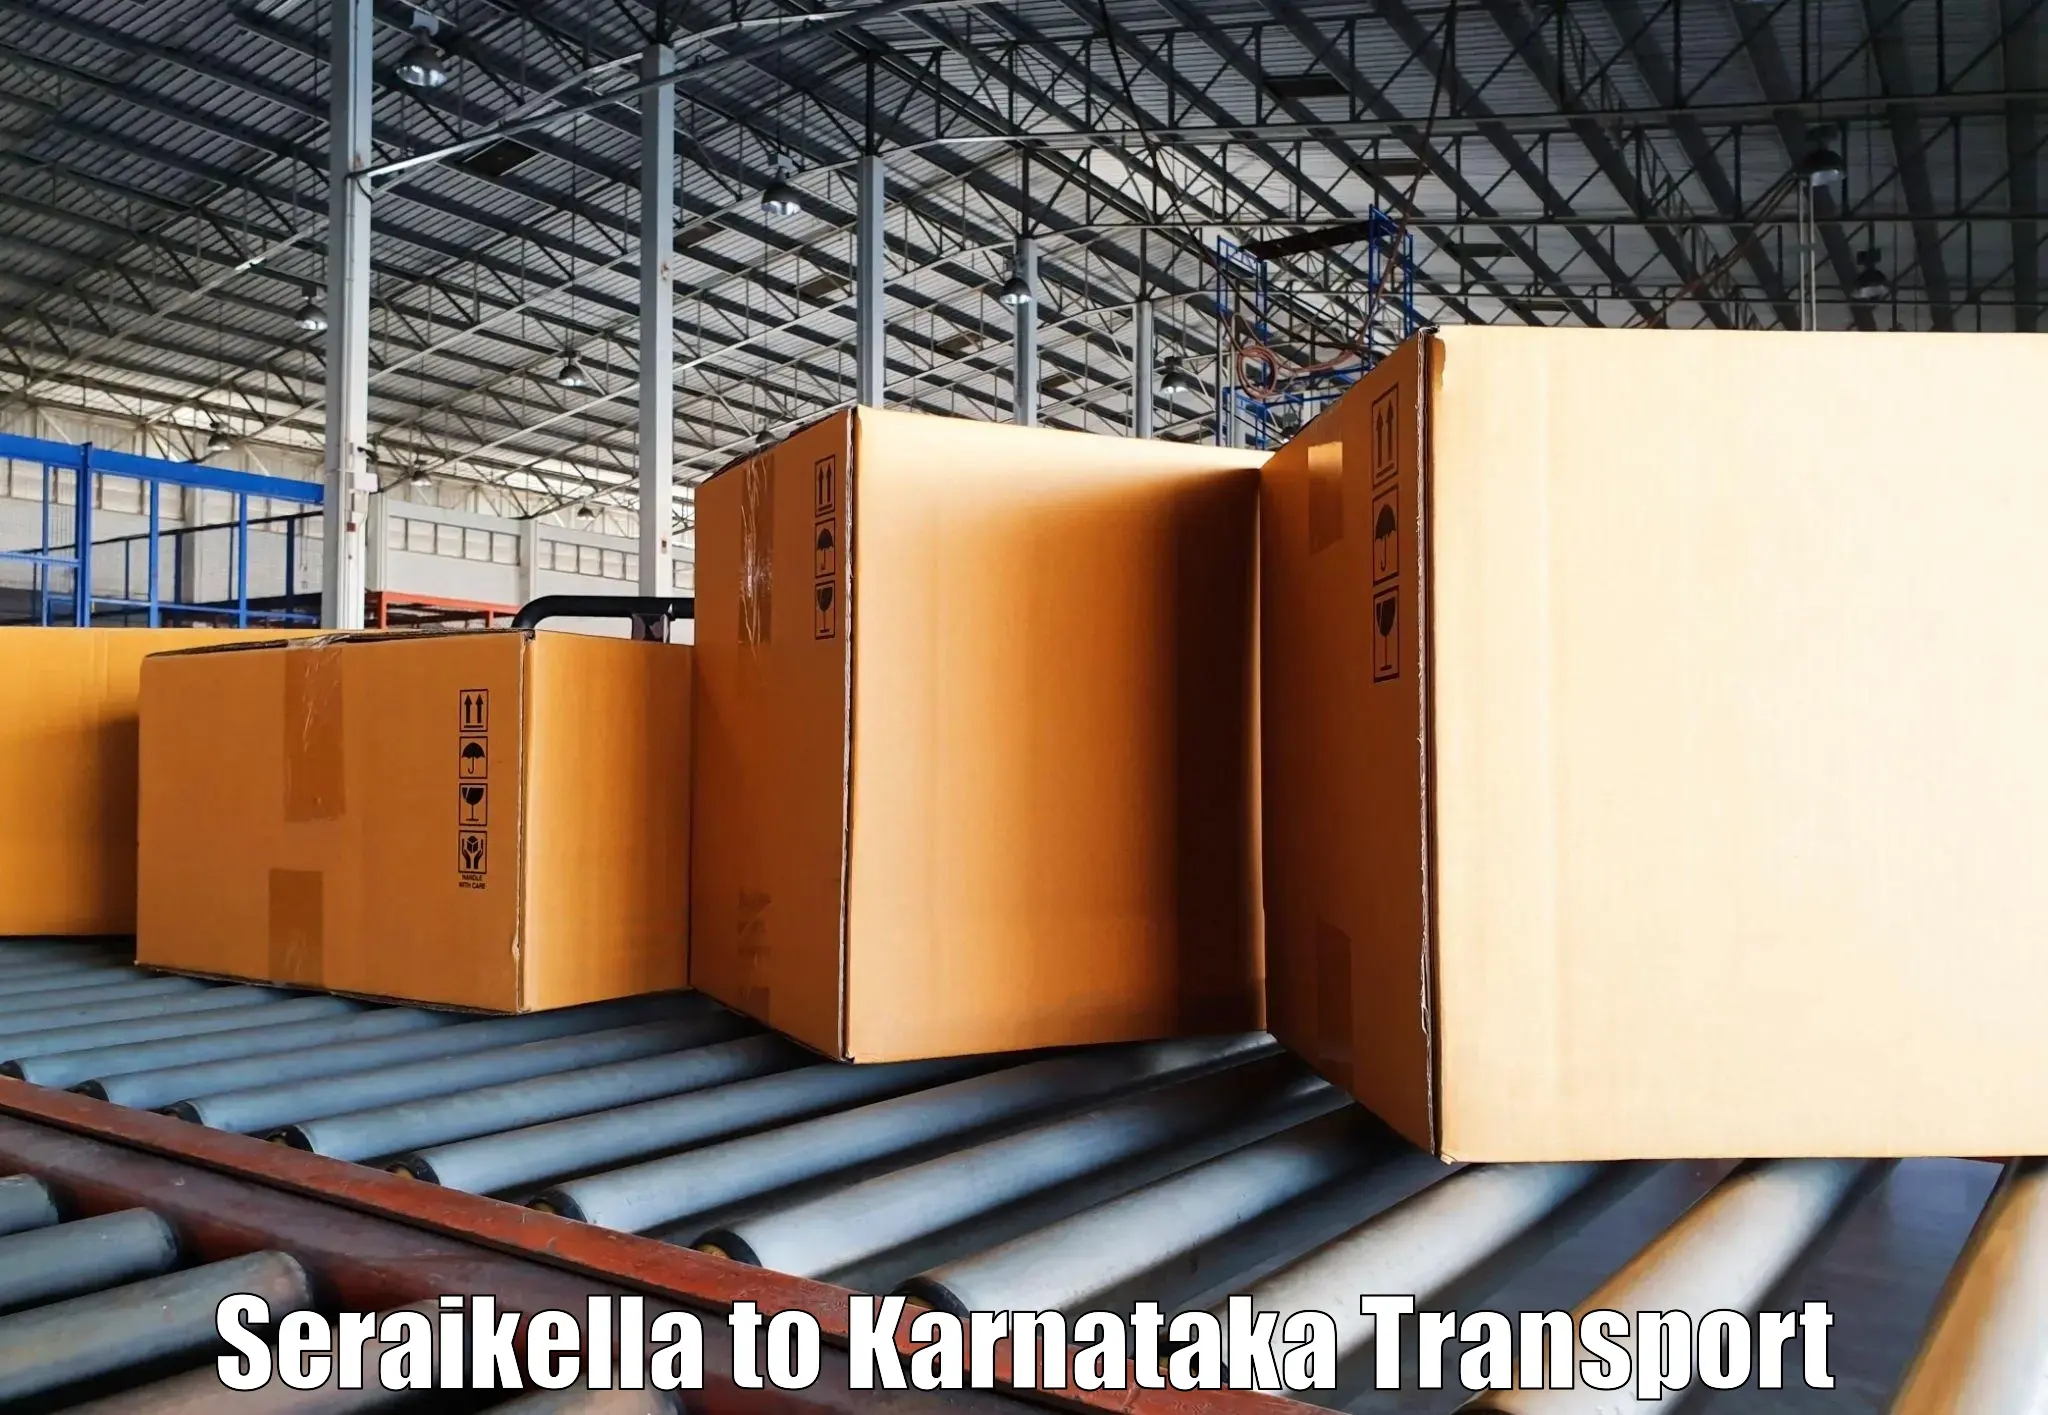 Door to door transport services Seraikella to Ankola